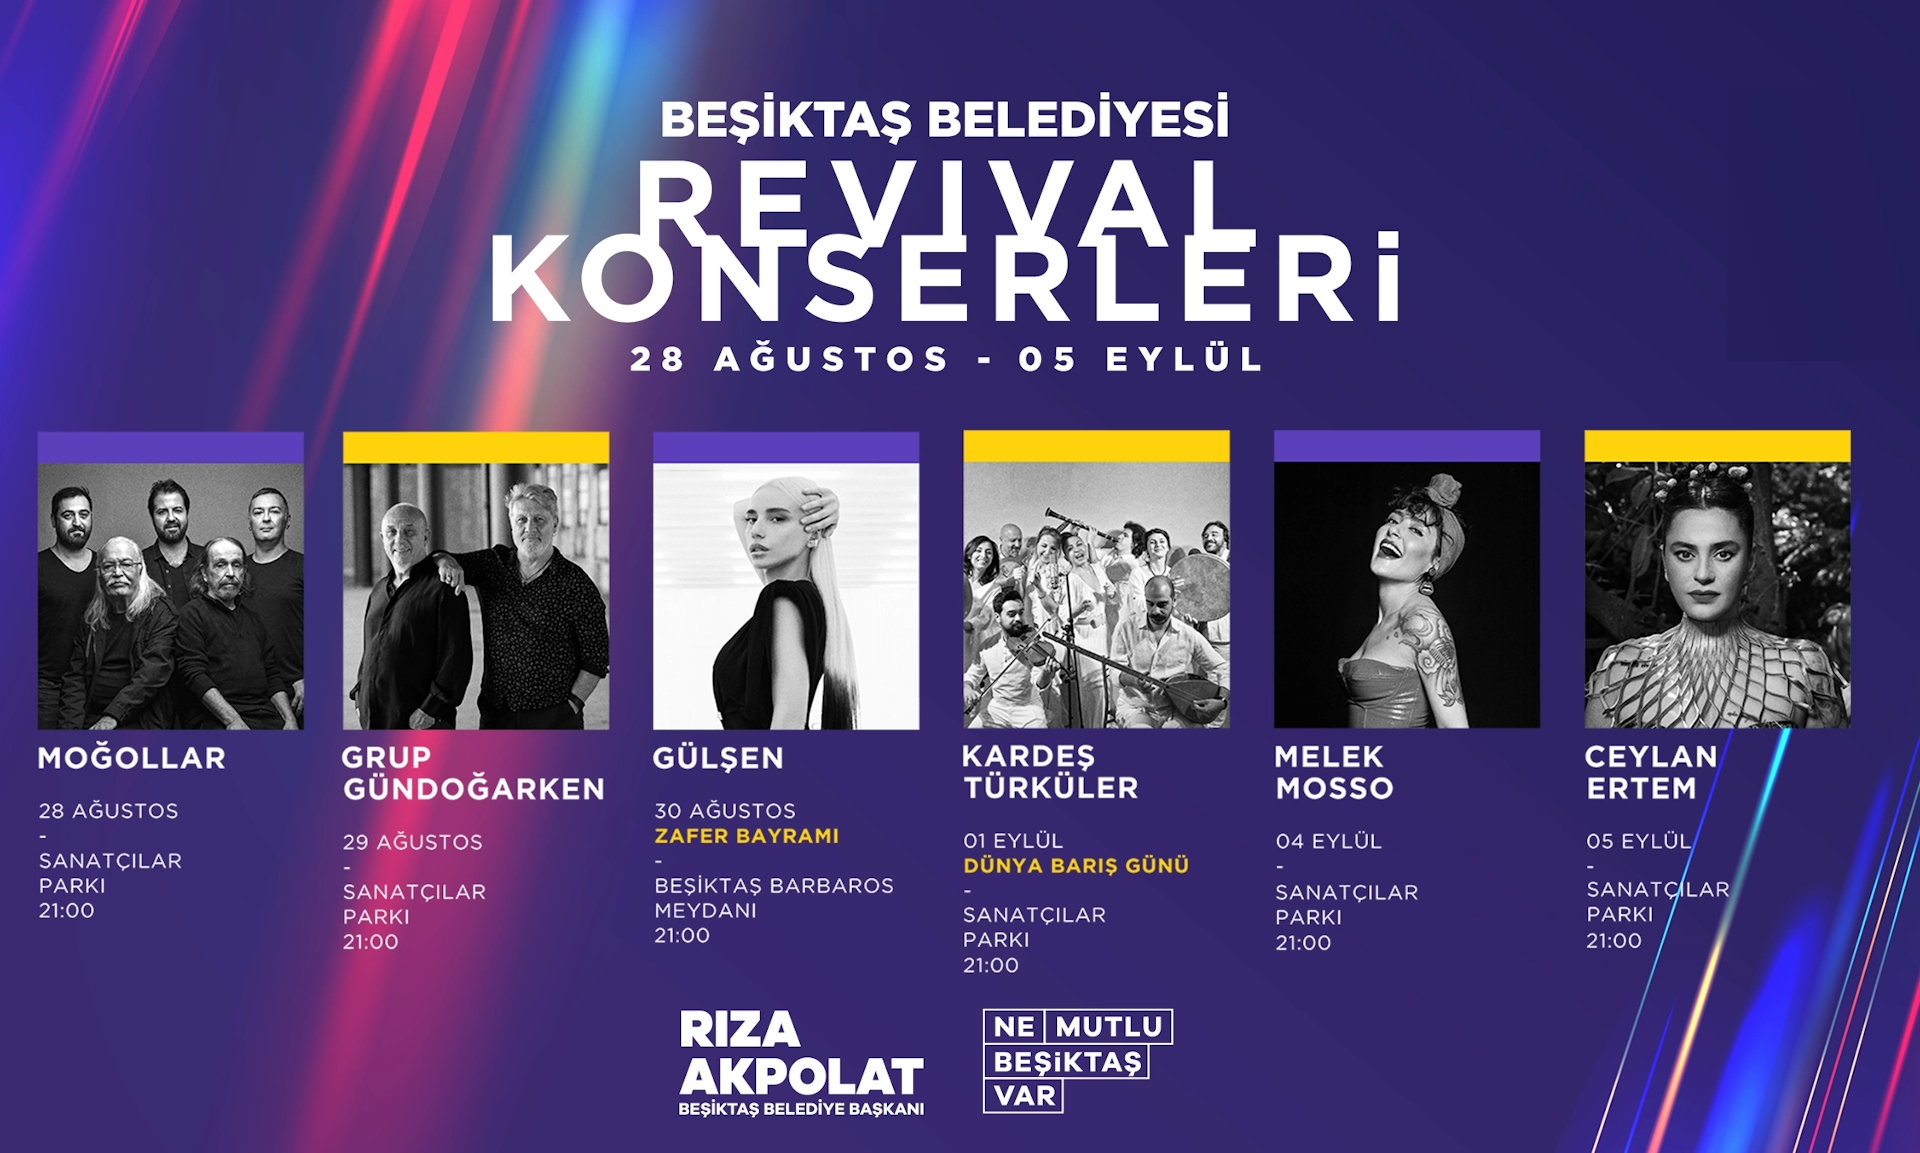 Grup Gündoğarken - Beşiktaş Belediyesi Revival Konserleri